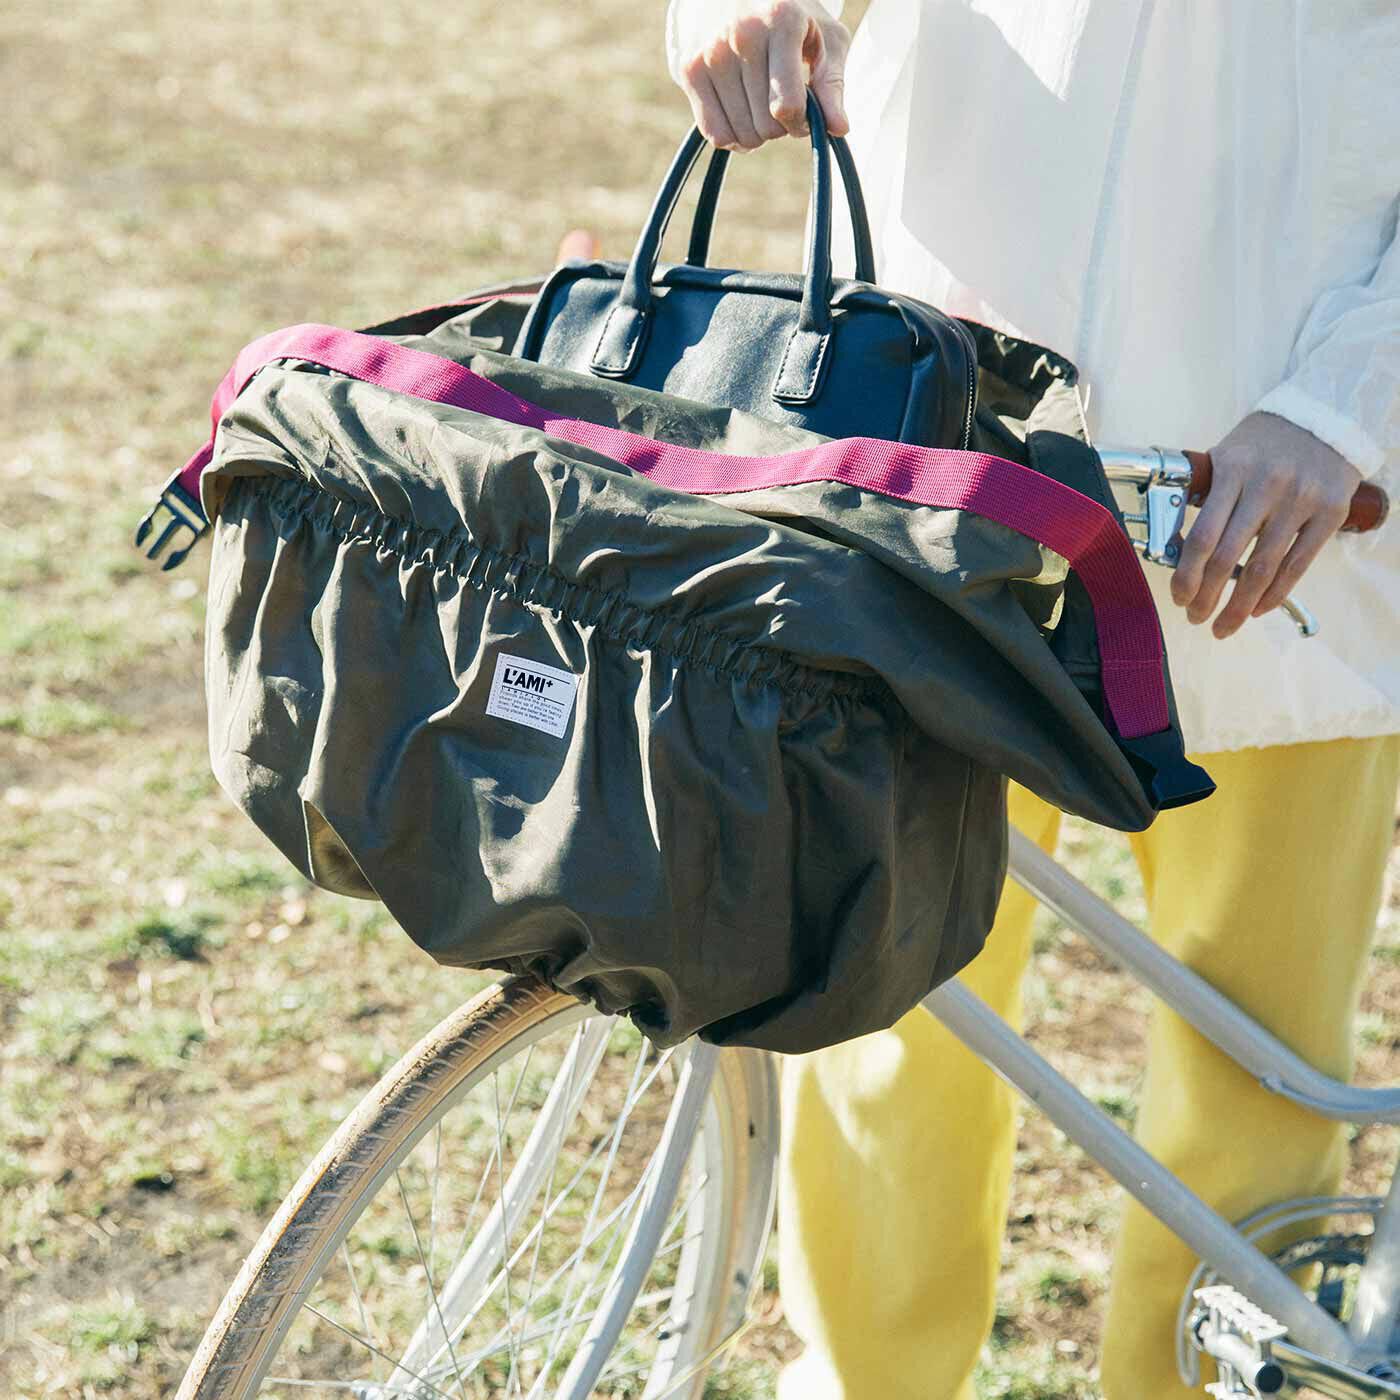 L'AMIPLUS|ラミプリュス　がばっと包んで人目やちょっとした雨から荷物を守る 取り付け簡単な自転車かごカバーの会|取り付けたまま必要なものを取り出せます。